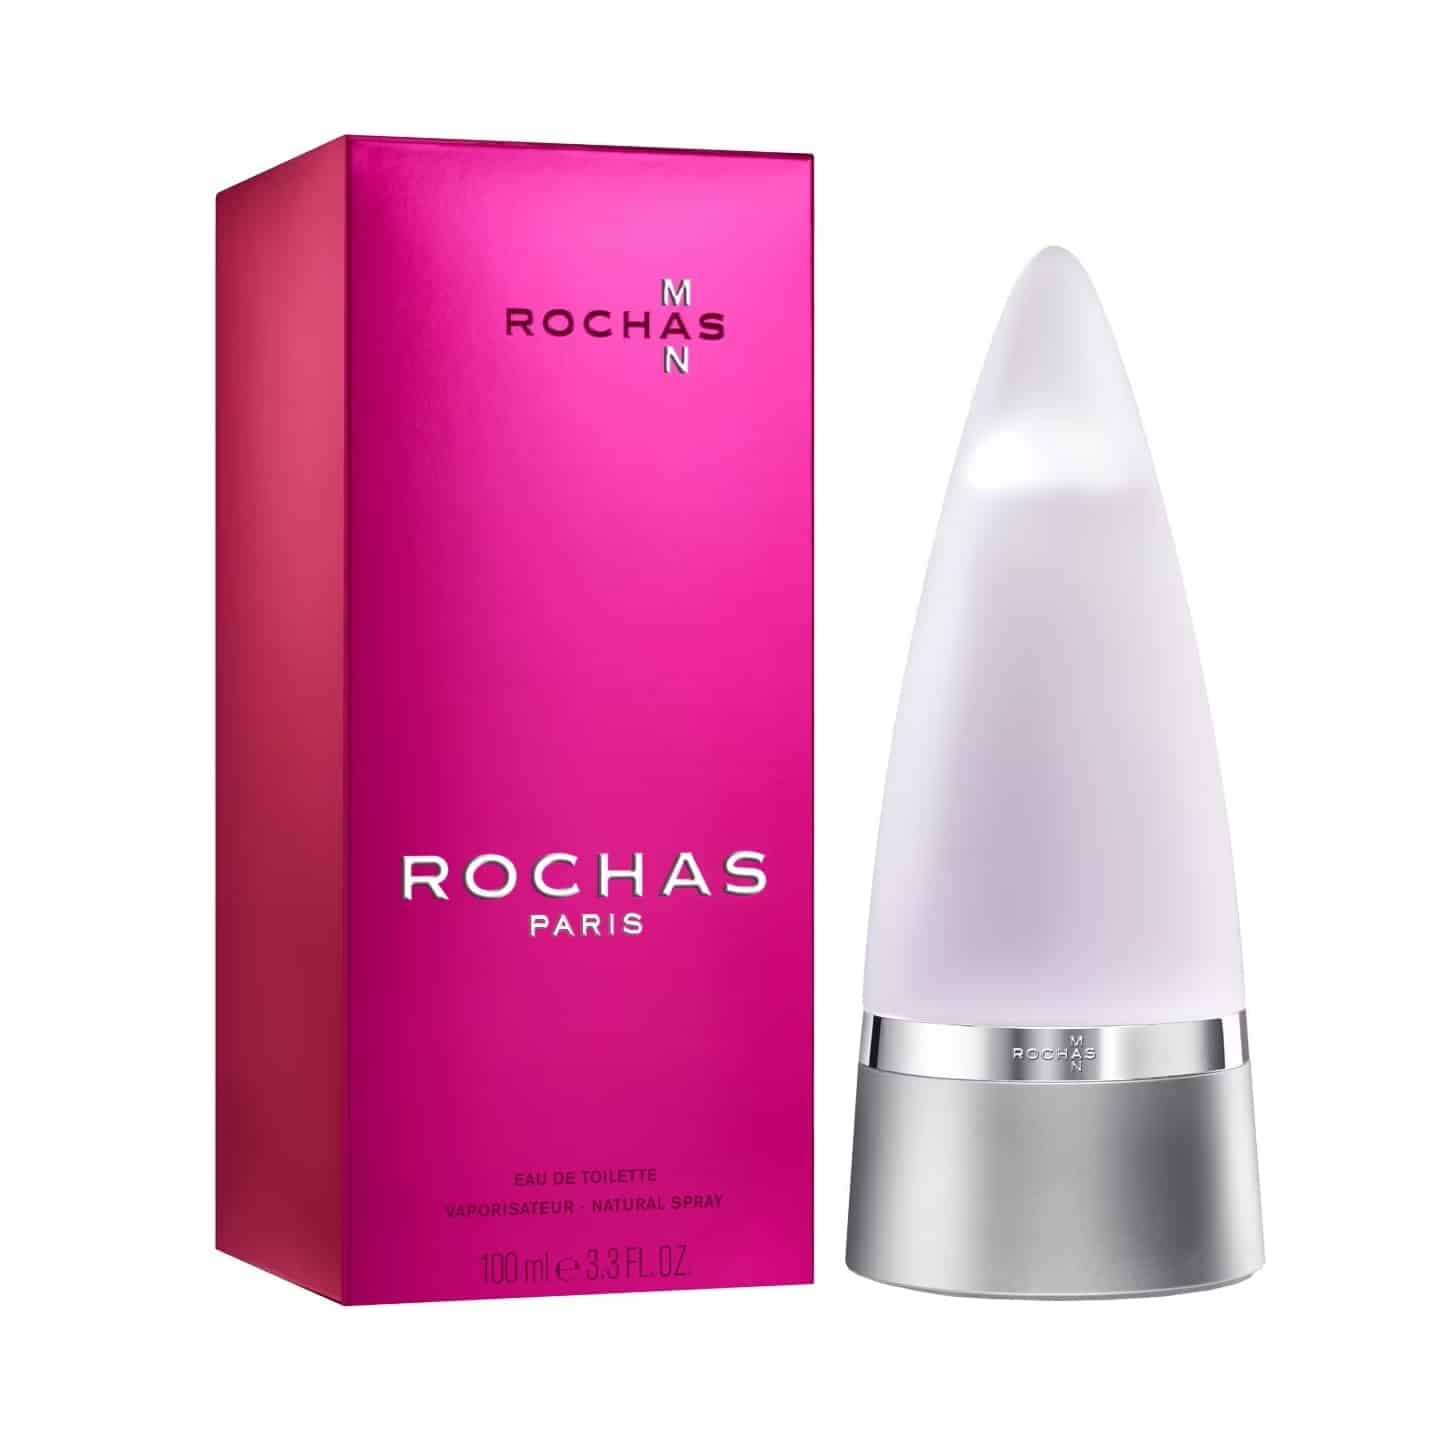 Rochas Man, un parfum de qualité moins connu du grand public